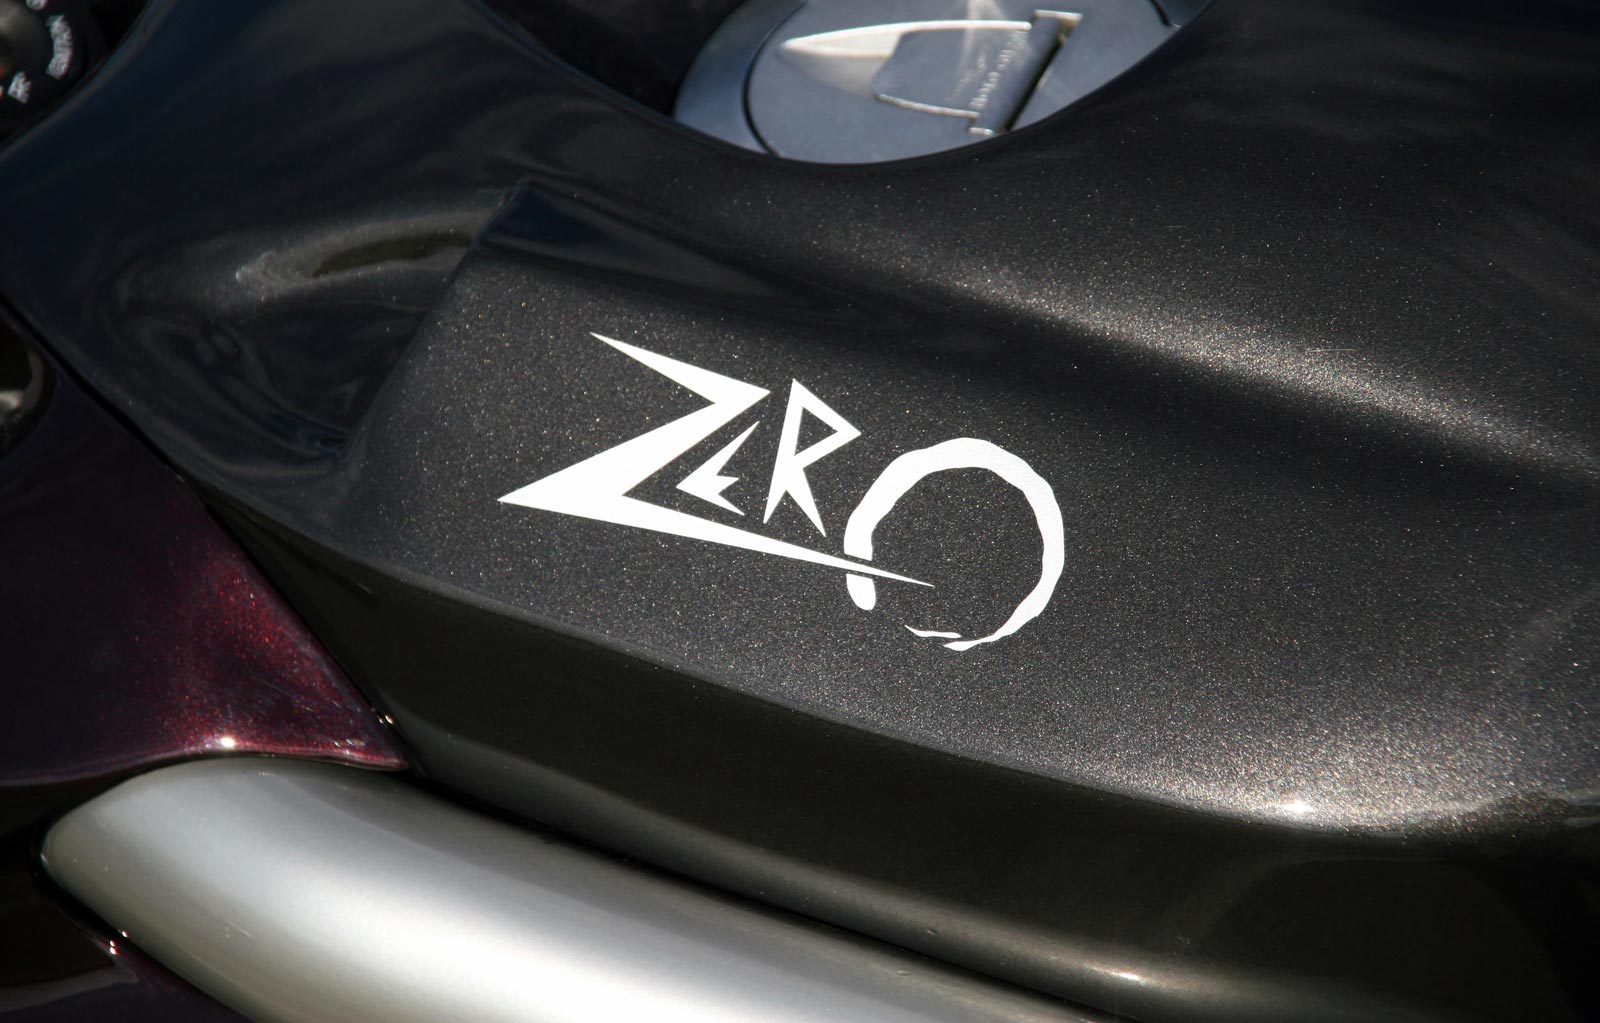 Moto Guzzi Griso "Zero" by Officine Rossopuro